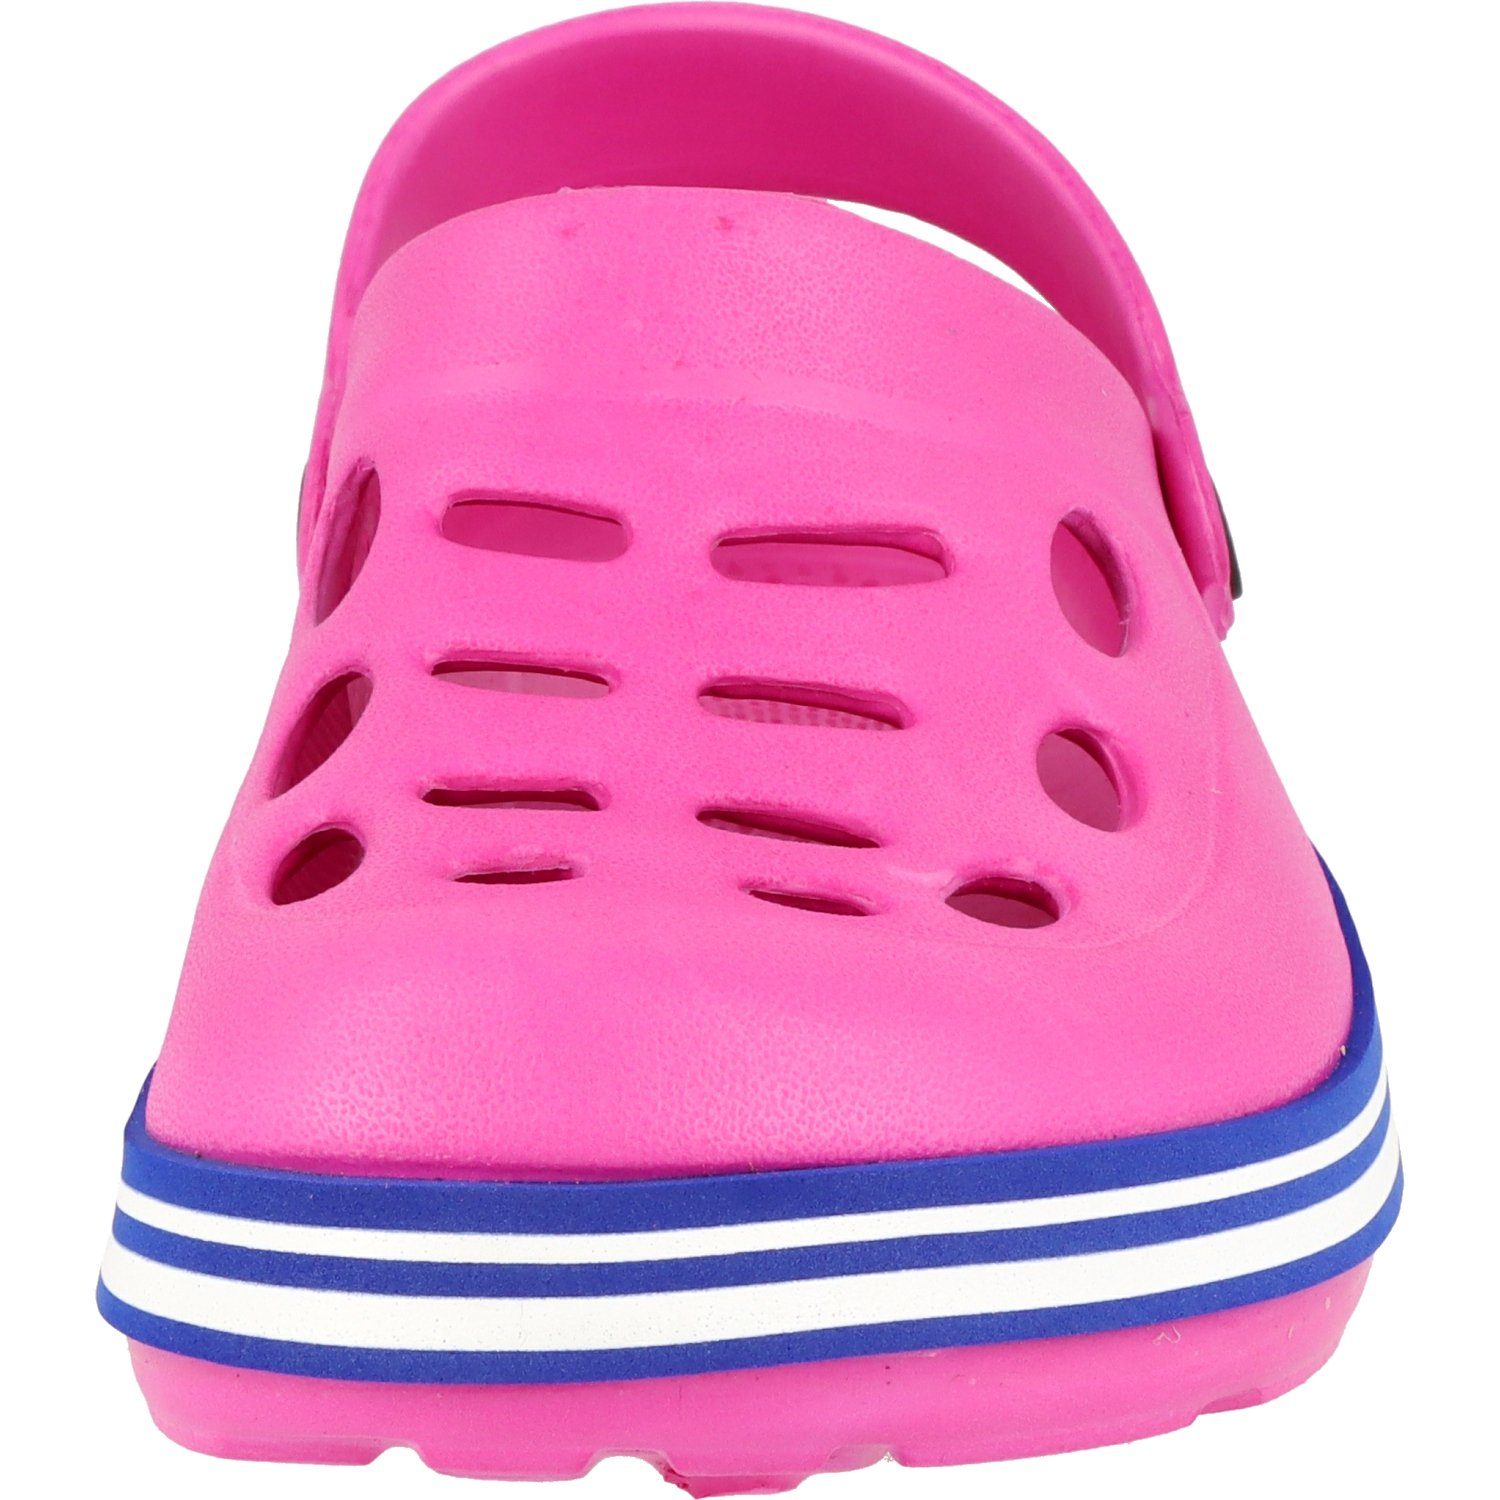 Damen/Mädchen Clogs R88410.33 Schuhe Clog Hausschuhe Pink Pantoletten Cloxx Gummi